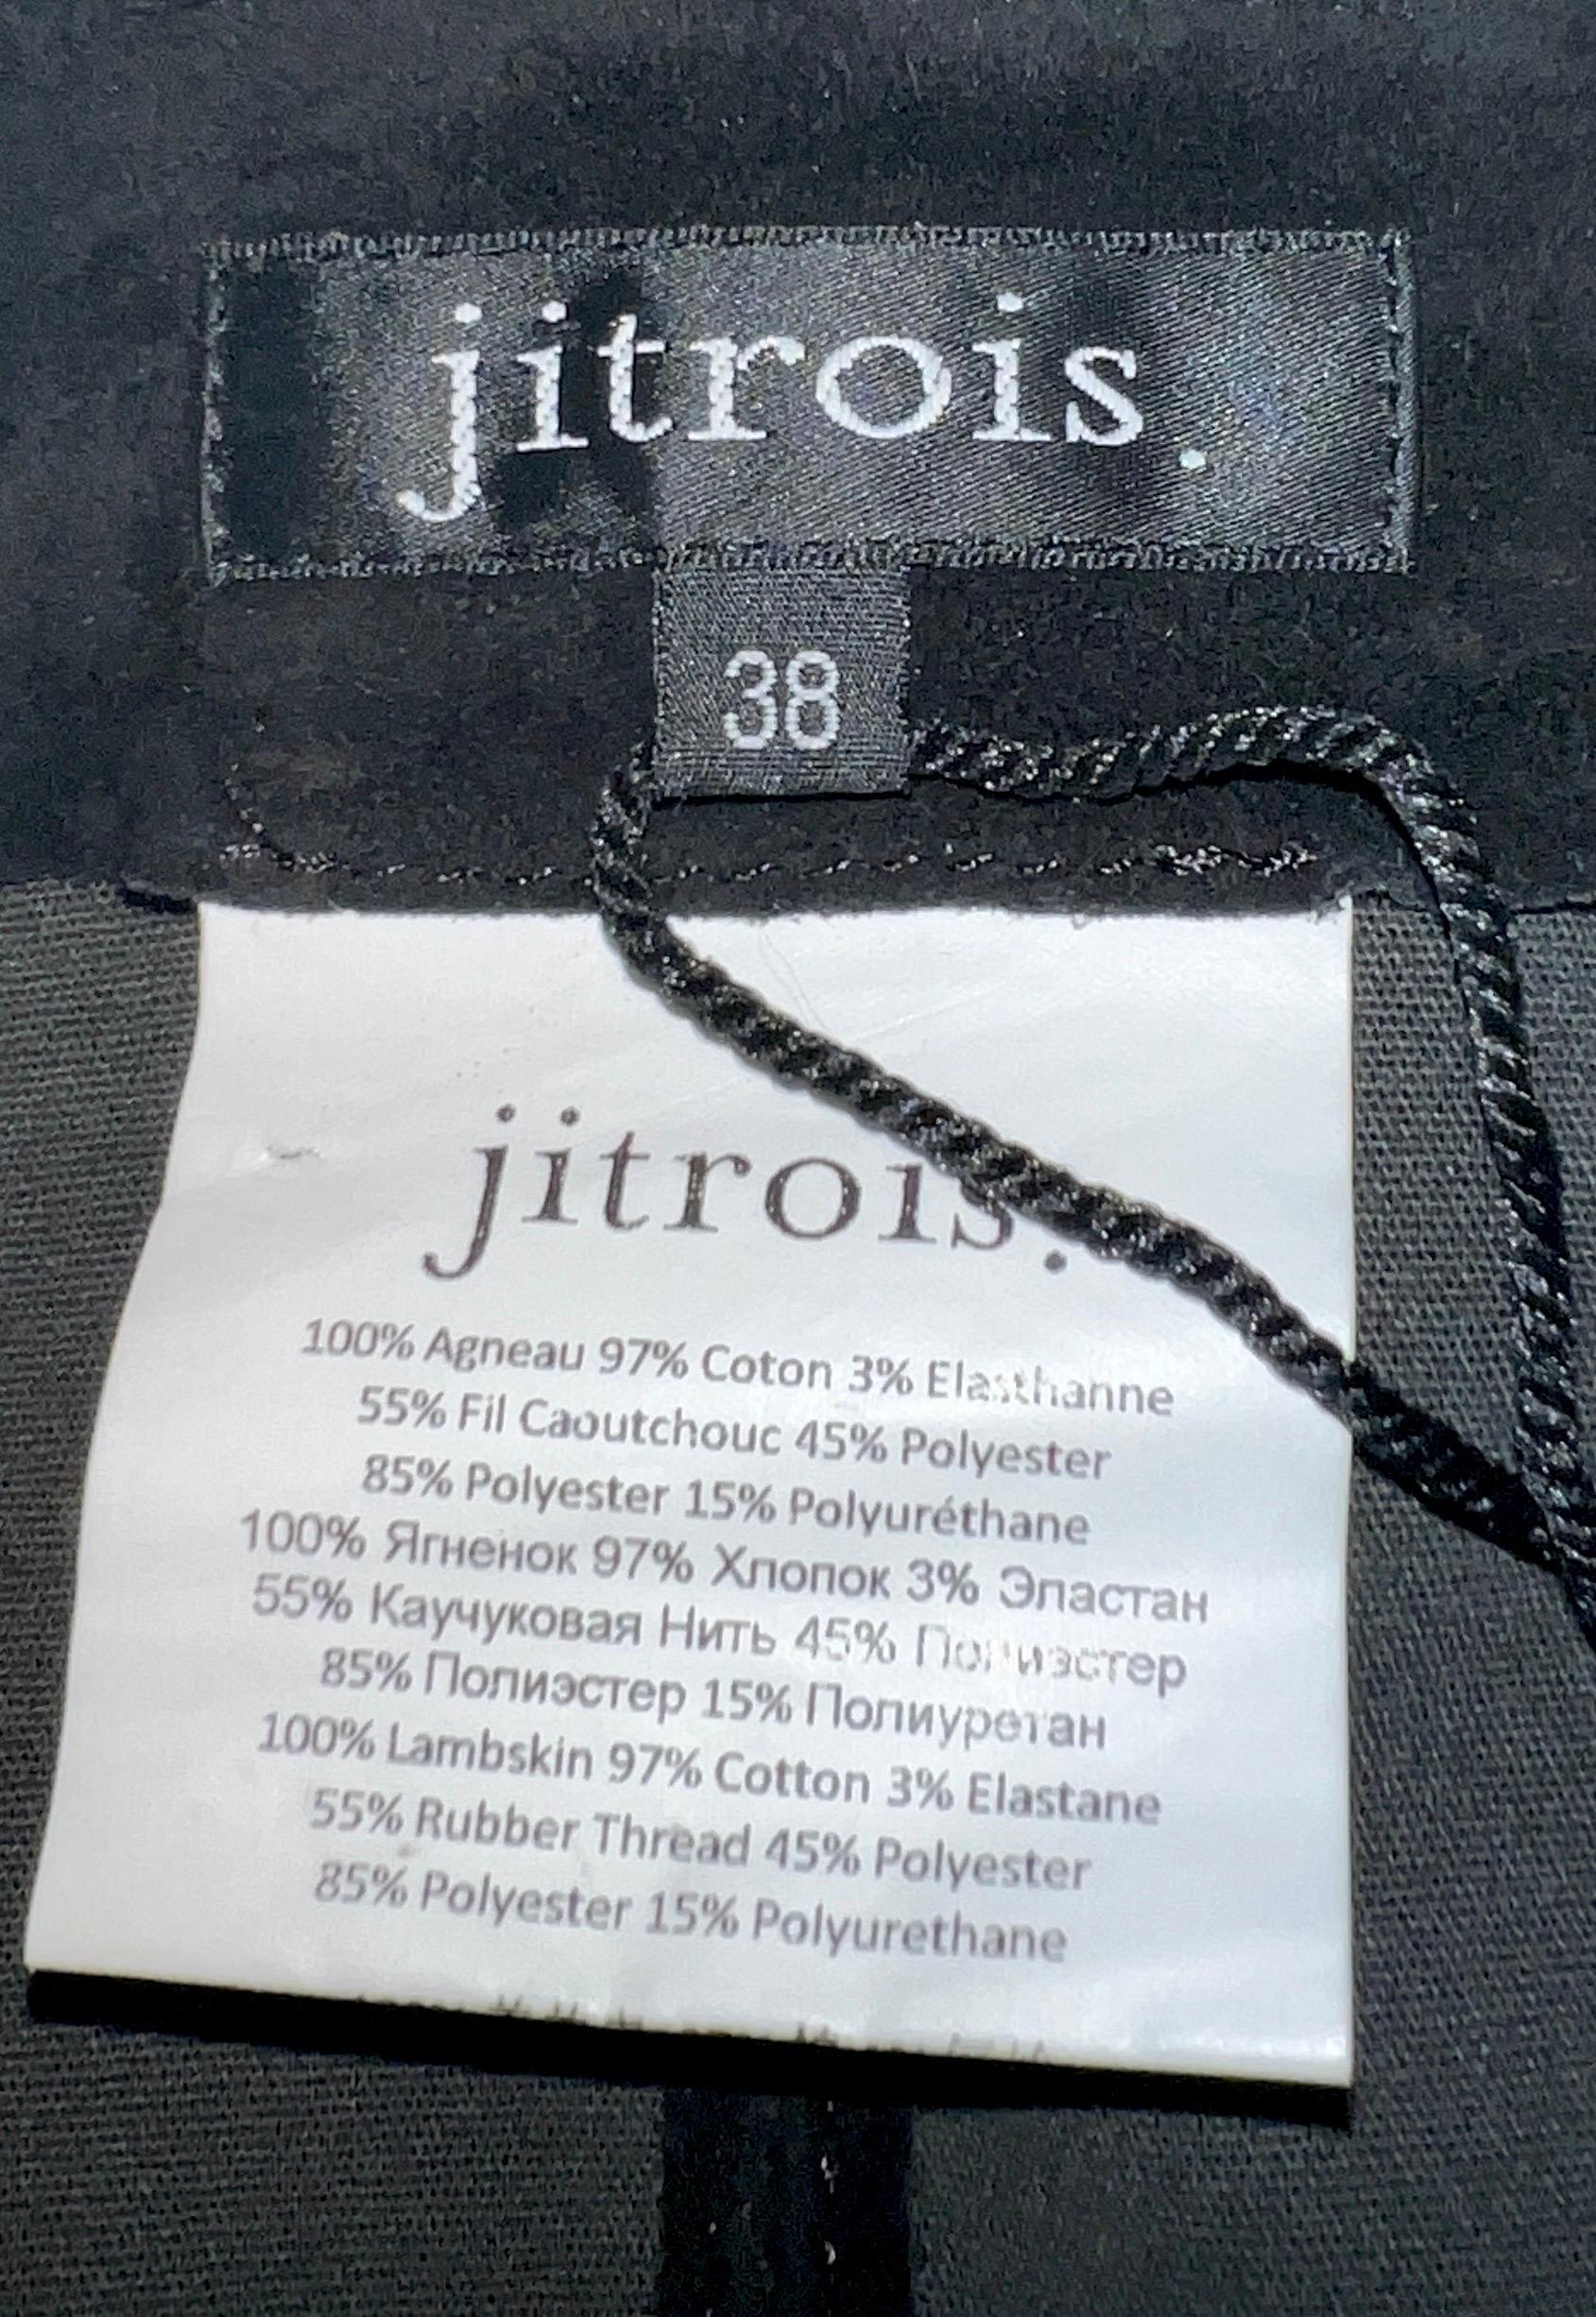 Black NEW Jitrois Suede Stretch Leather Pants Leggings Bondage Lace Up Details 38 For Sale